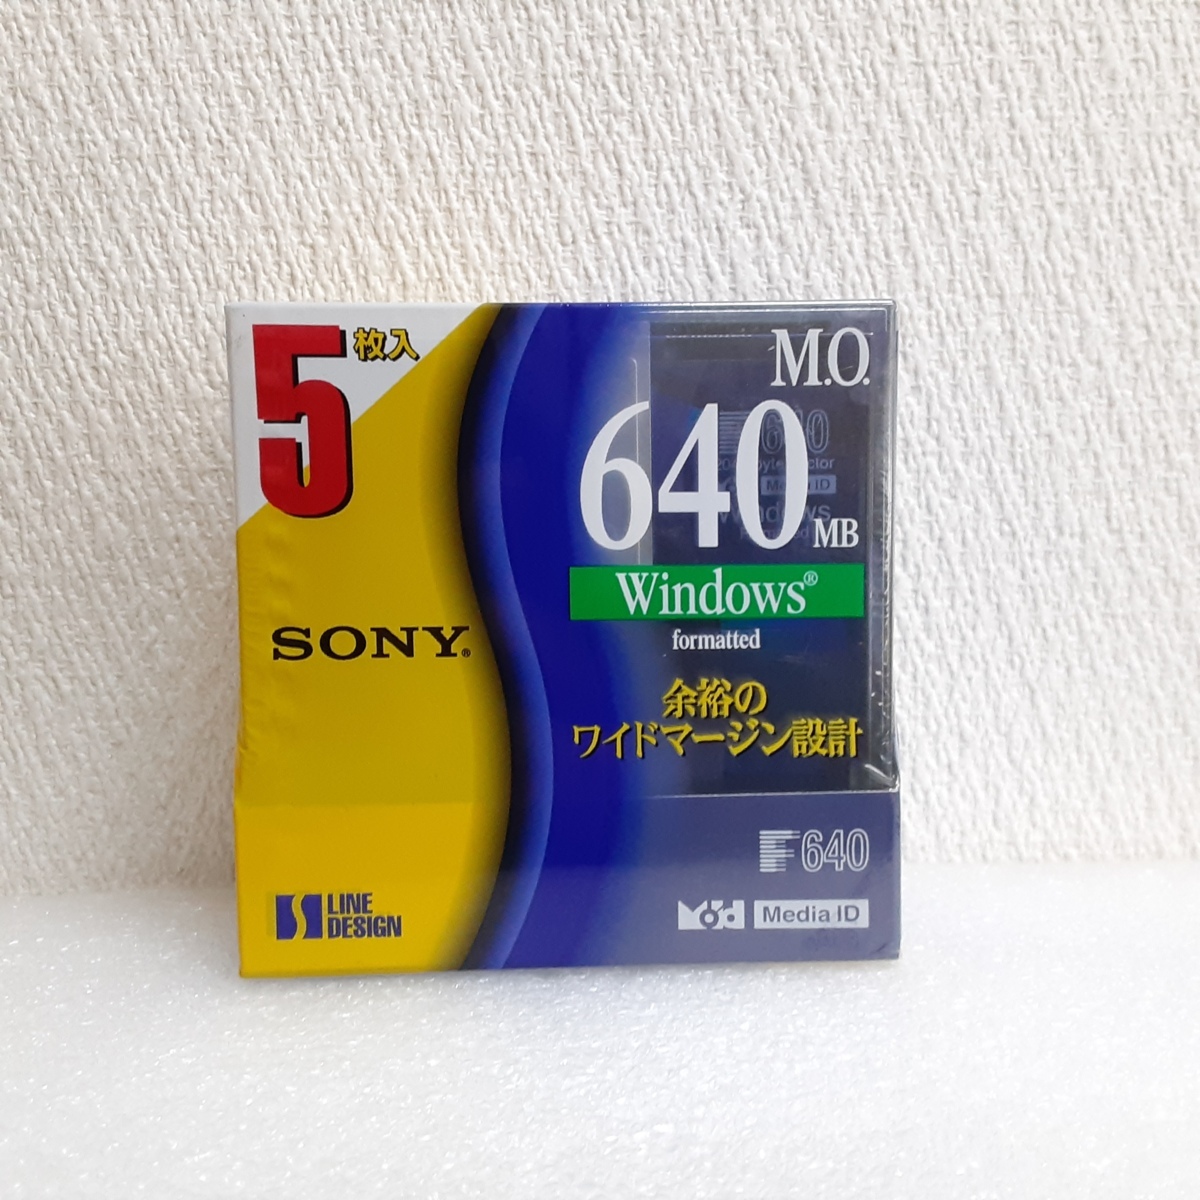 SONY / ソニー 3.5型 光磁気ディスク MO 640MB 5枚パック  5EDM-640CDF 【未使用・中古品】Y178-2の画像2